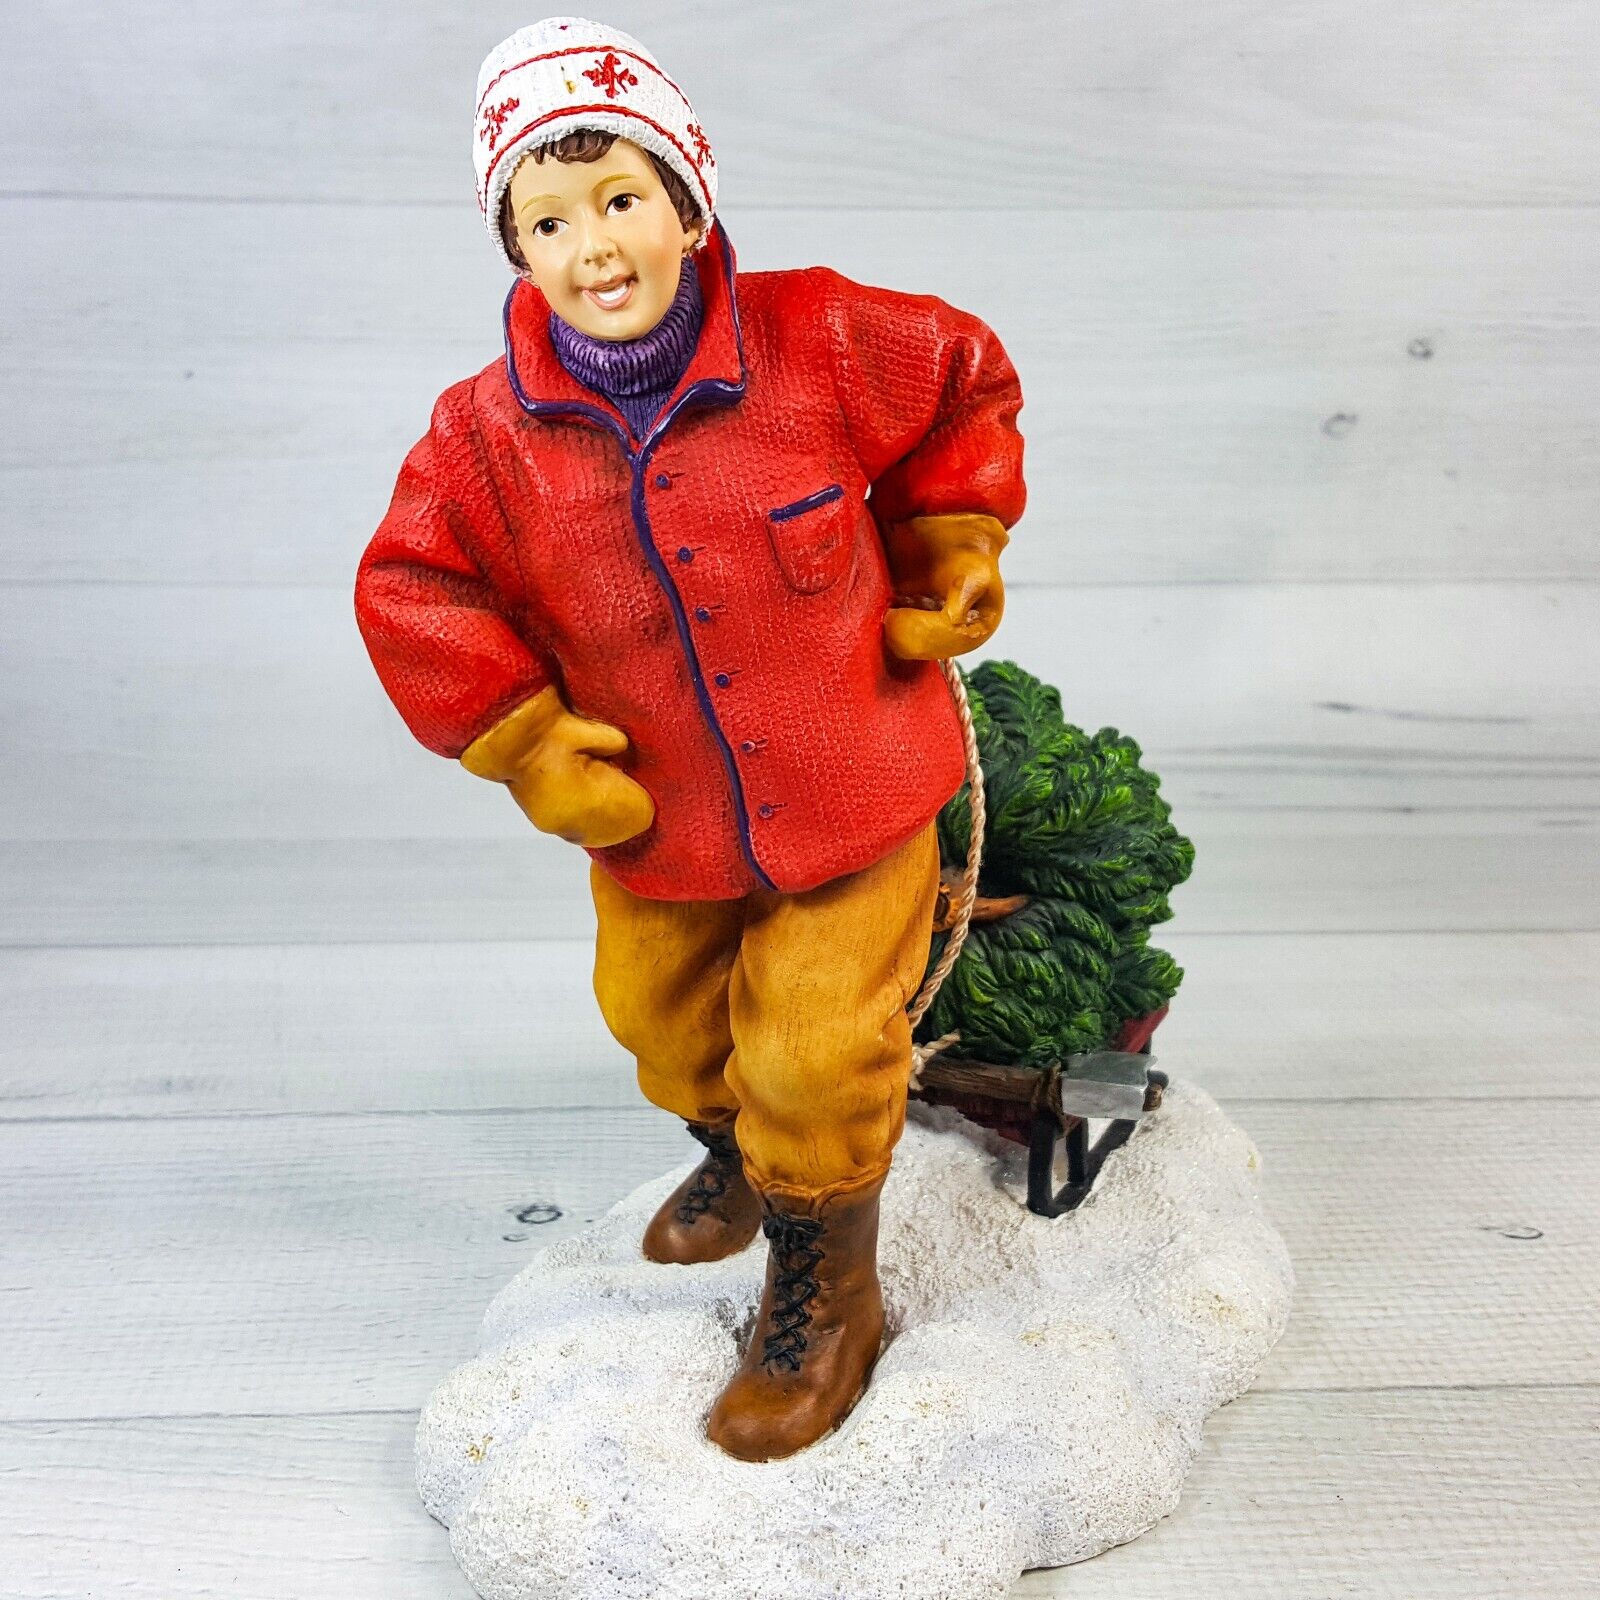 Vintage Pipka Kinder Christmas Jakub’s Tree Figurine Limited Edition #1771/6500